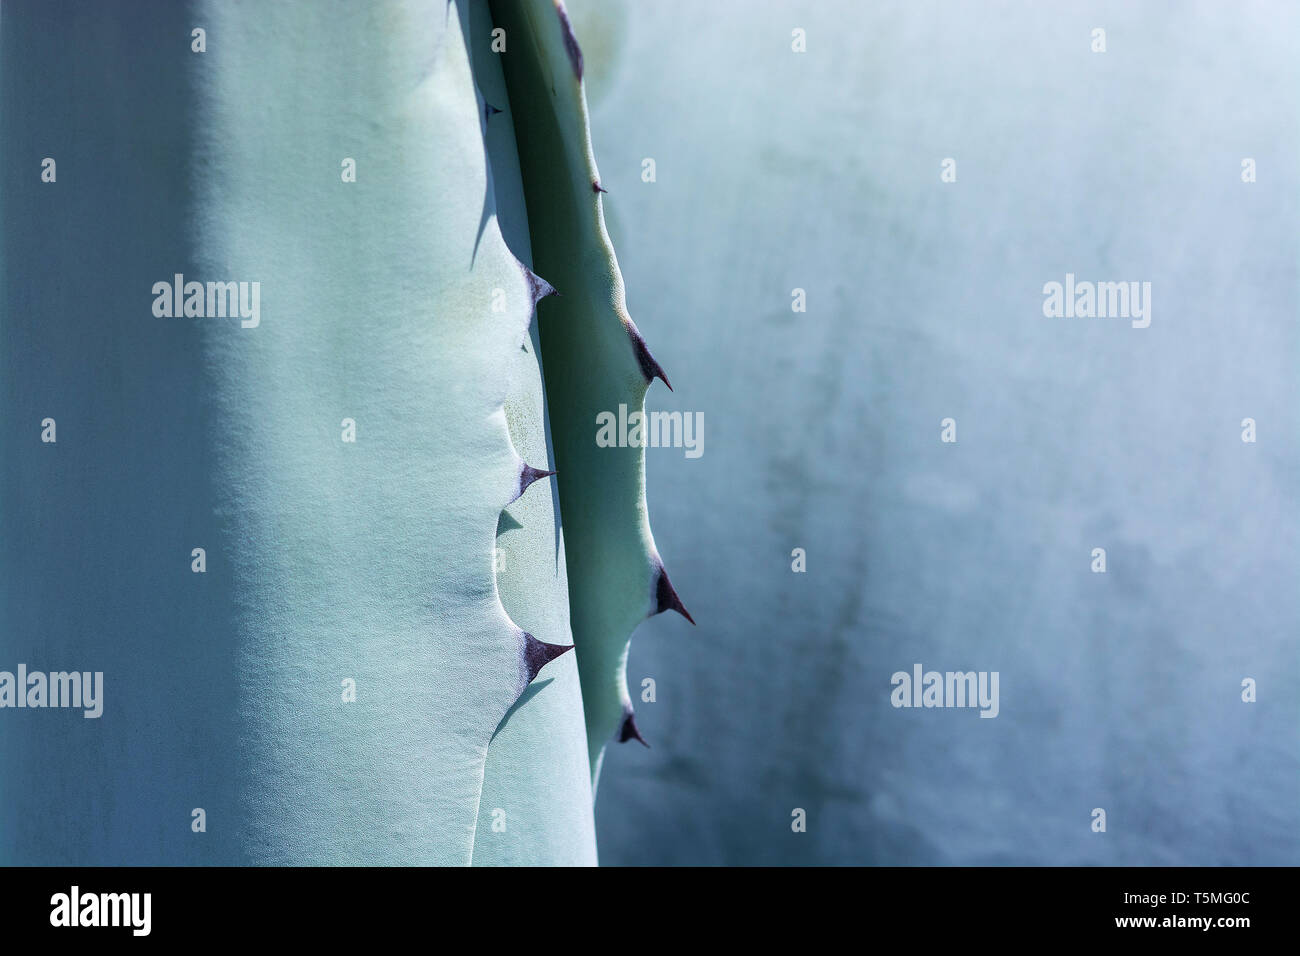 Abstract succulente pianta di agave closeup macro con texture e spine Foto Stock